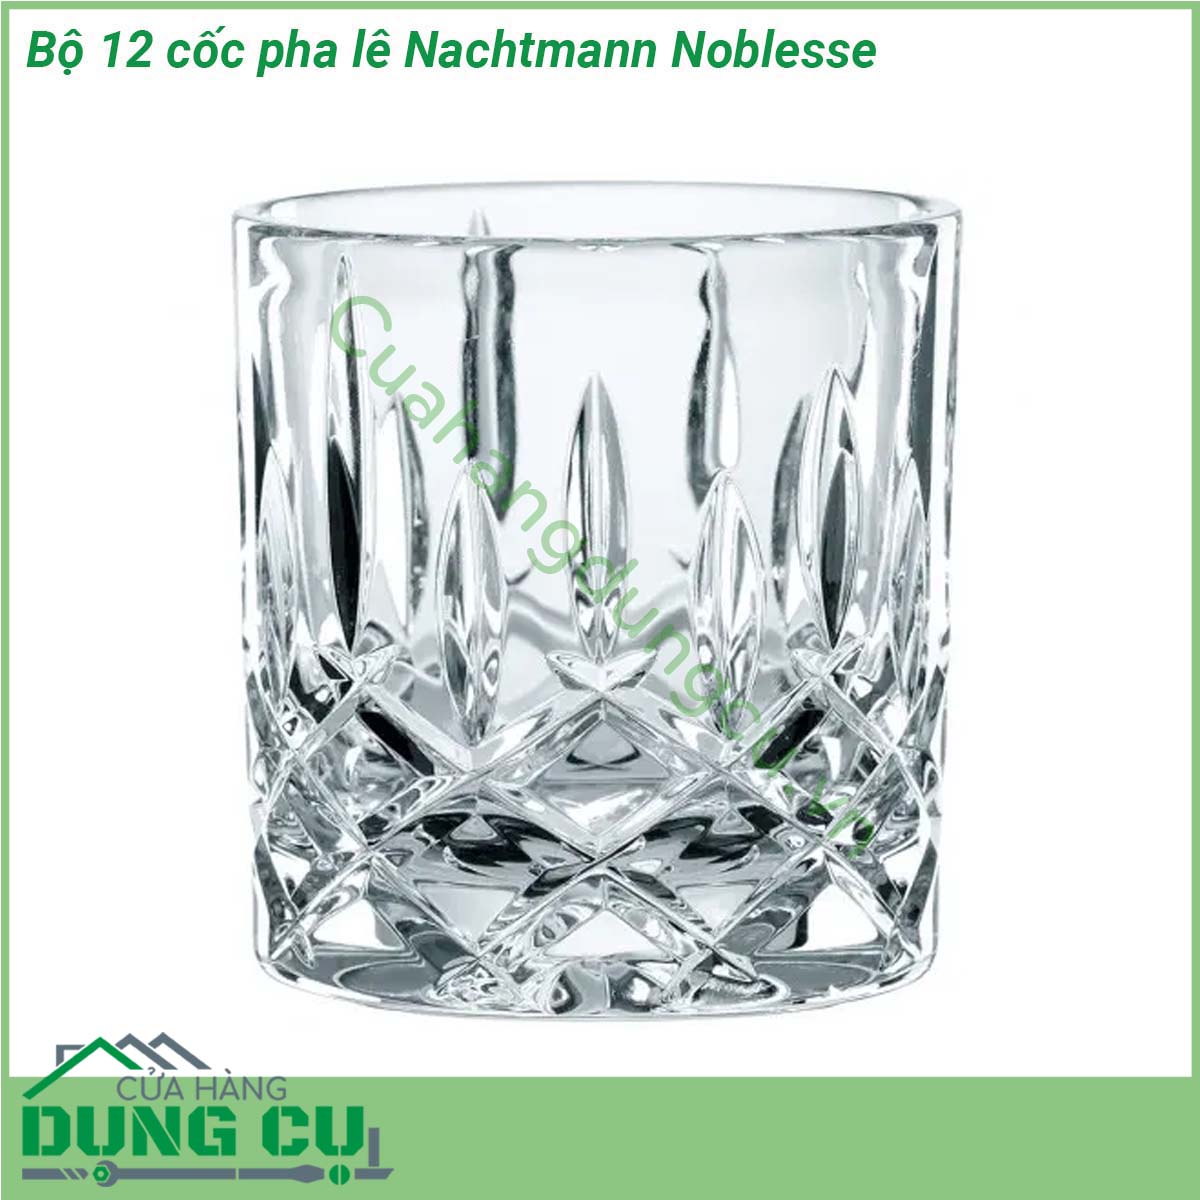 Bộ 12 cốc pha lê Nachtmann Noblesse nhẹ bền có khả năng chịu lực tốt màu sắc và độ sáng bóng không bị mai một với thời gian Nachtmann Noblesse được sản xuất 100 tại Đức Có khả năng chịu nhiệt lên tới 65 độ C và có thể vệ sinh an toàn bằng máy rửa bát  không làm suy giảm chất lượng thủy tinh sau nhiều lần rửa